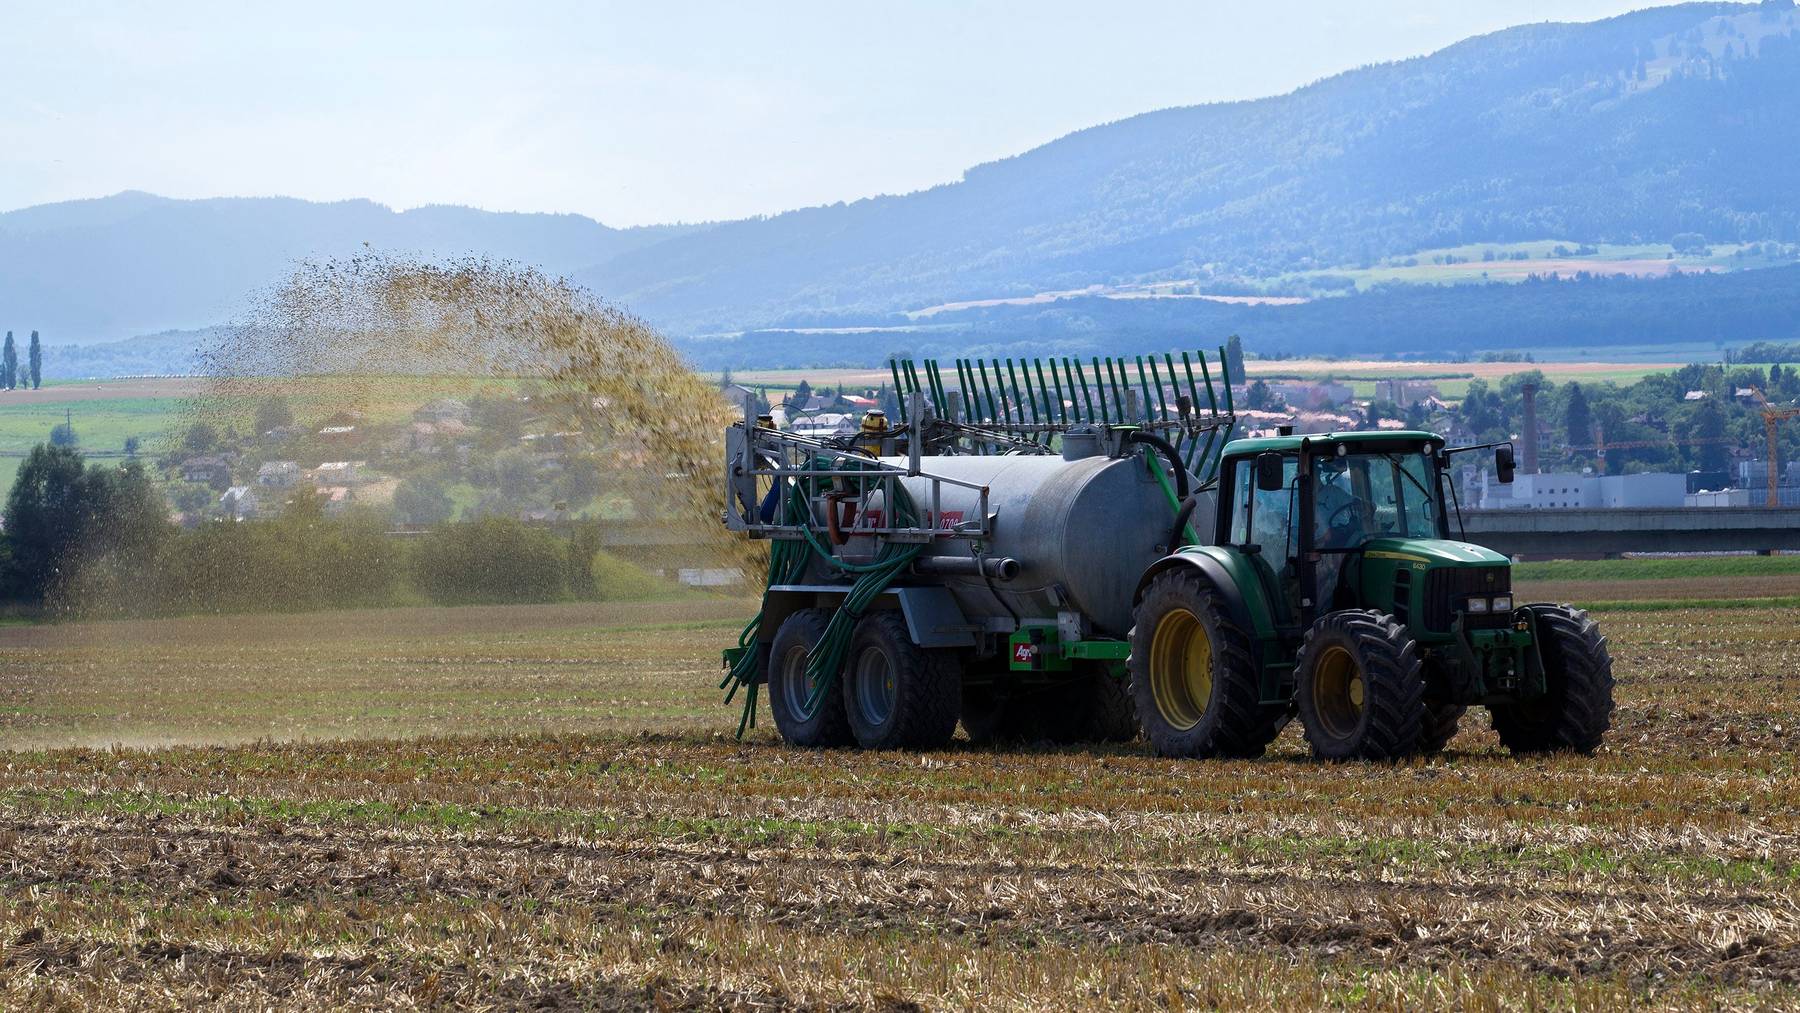 Die Ammoniak-Emissionen aus der Landwirtschaft führen zu Überdüngung und Versauerung. (Symbolbild)